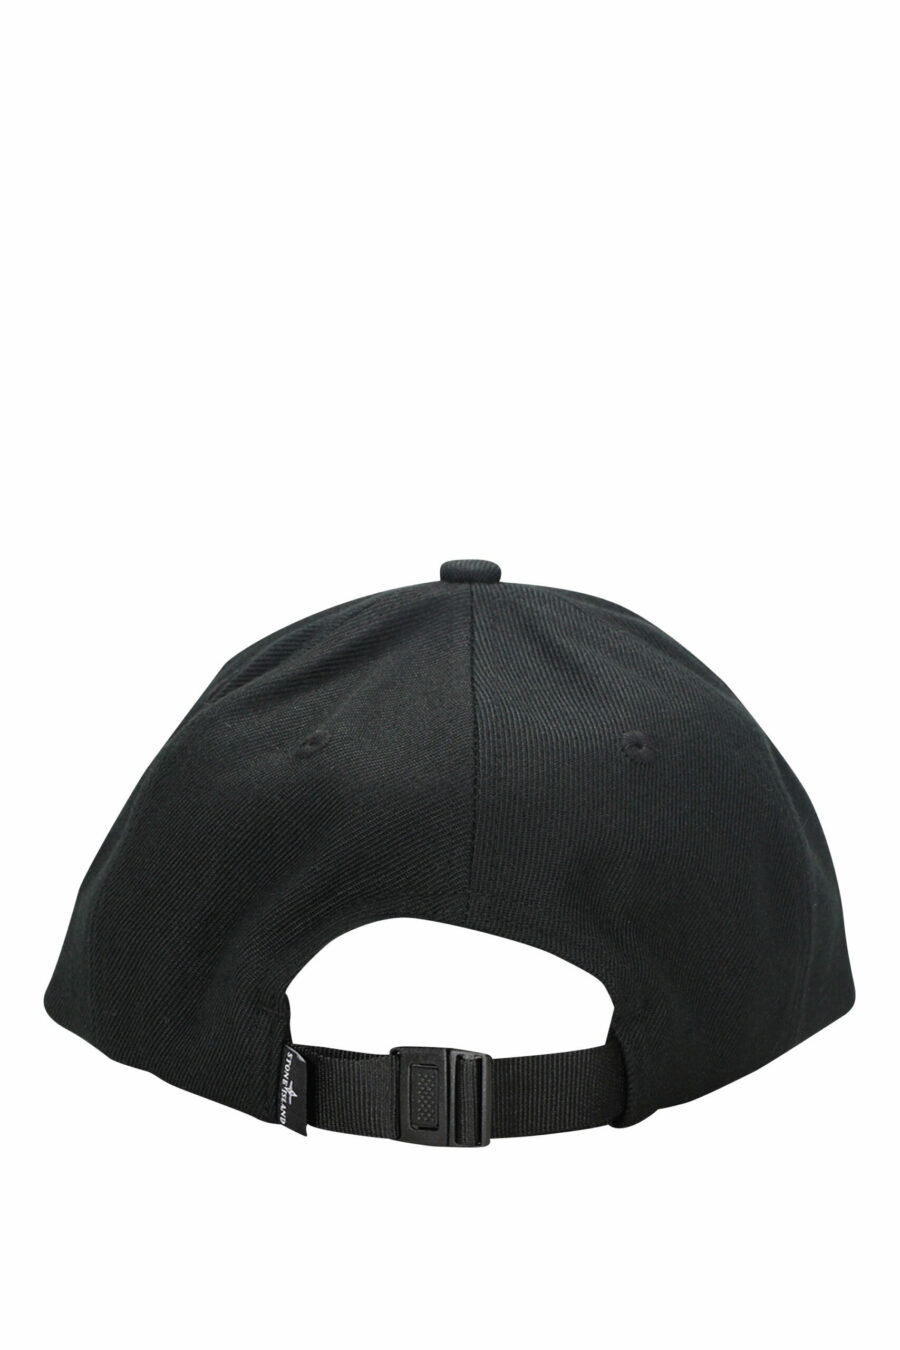 Gorra negra con logo bordado en relieve - 8052572734557 1 scaled